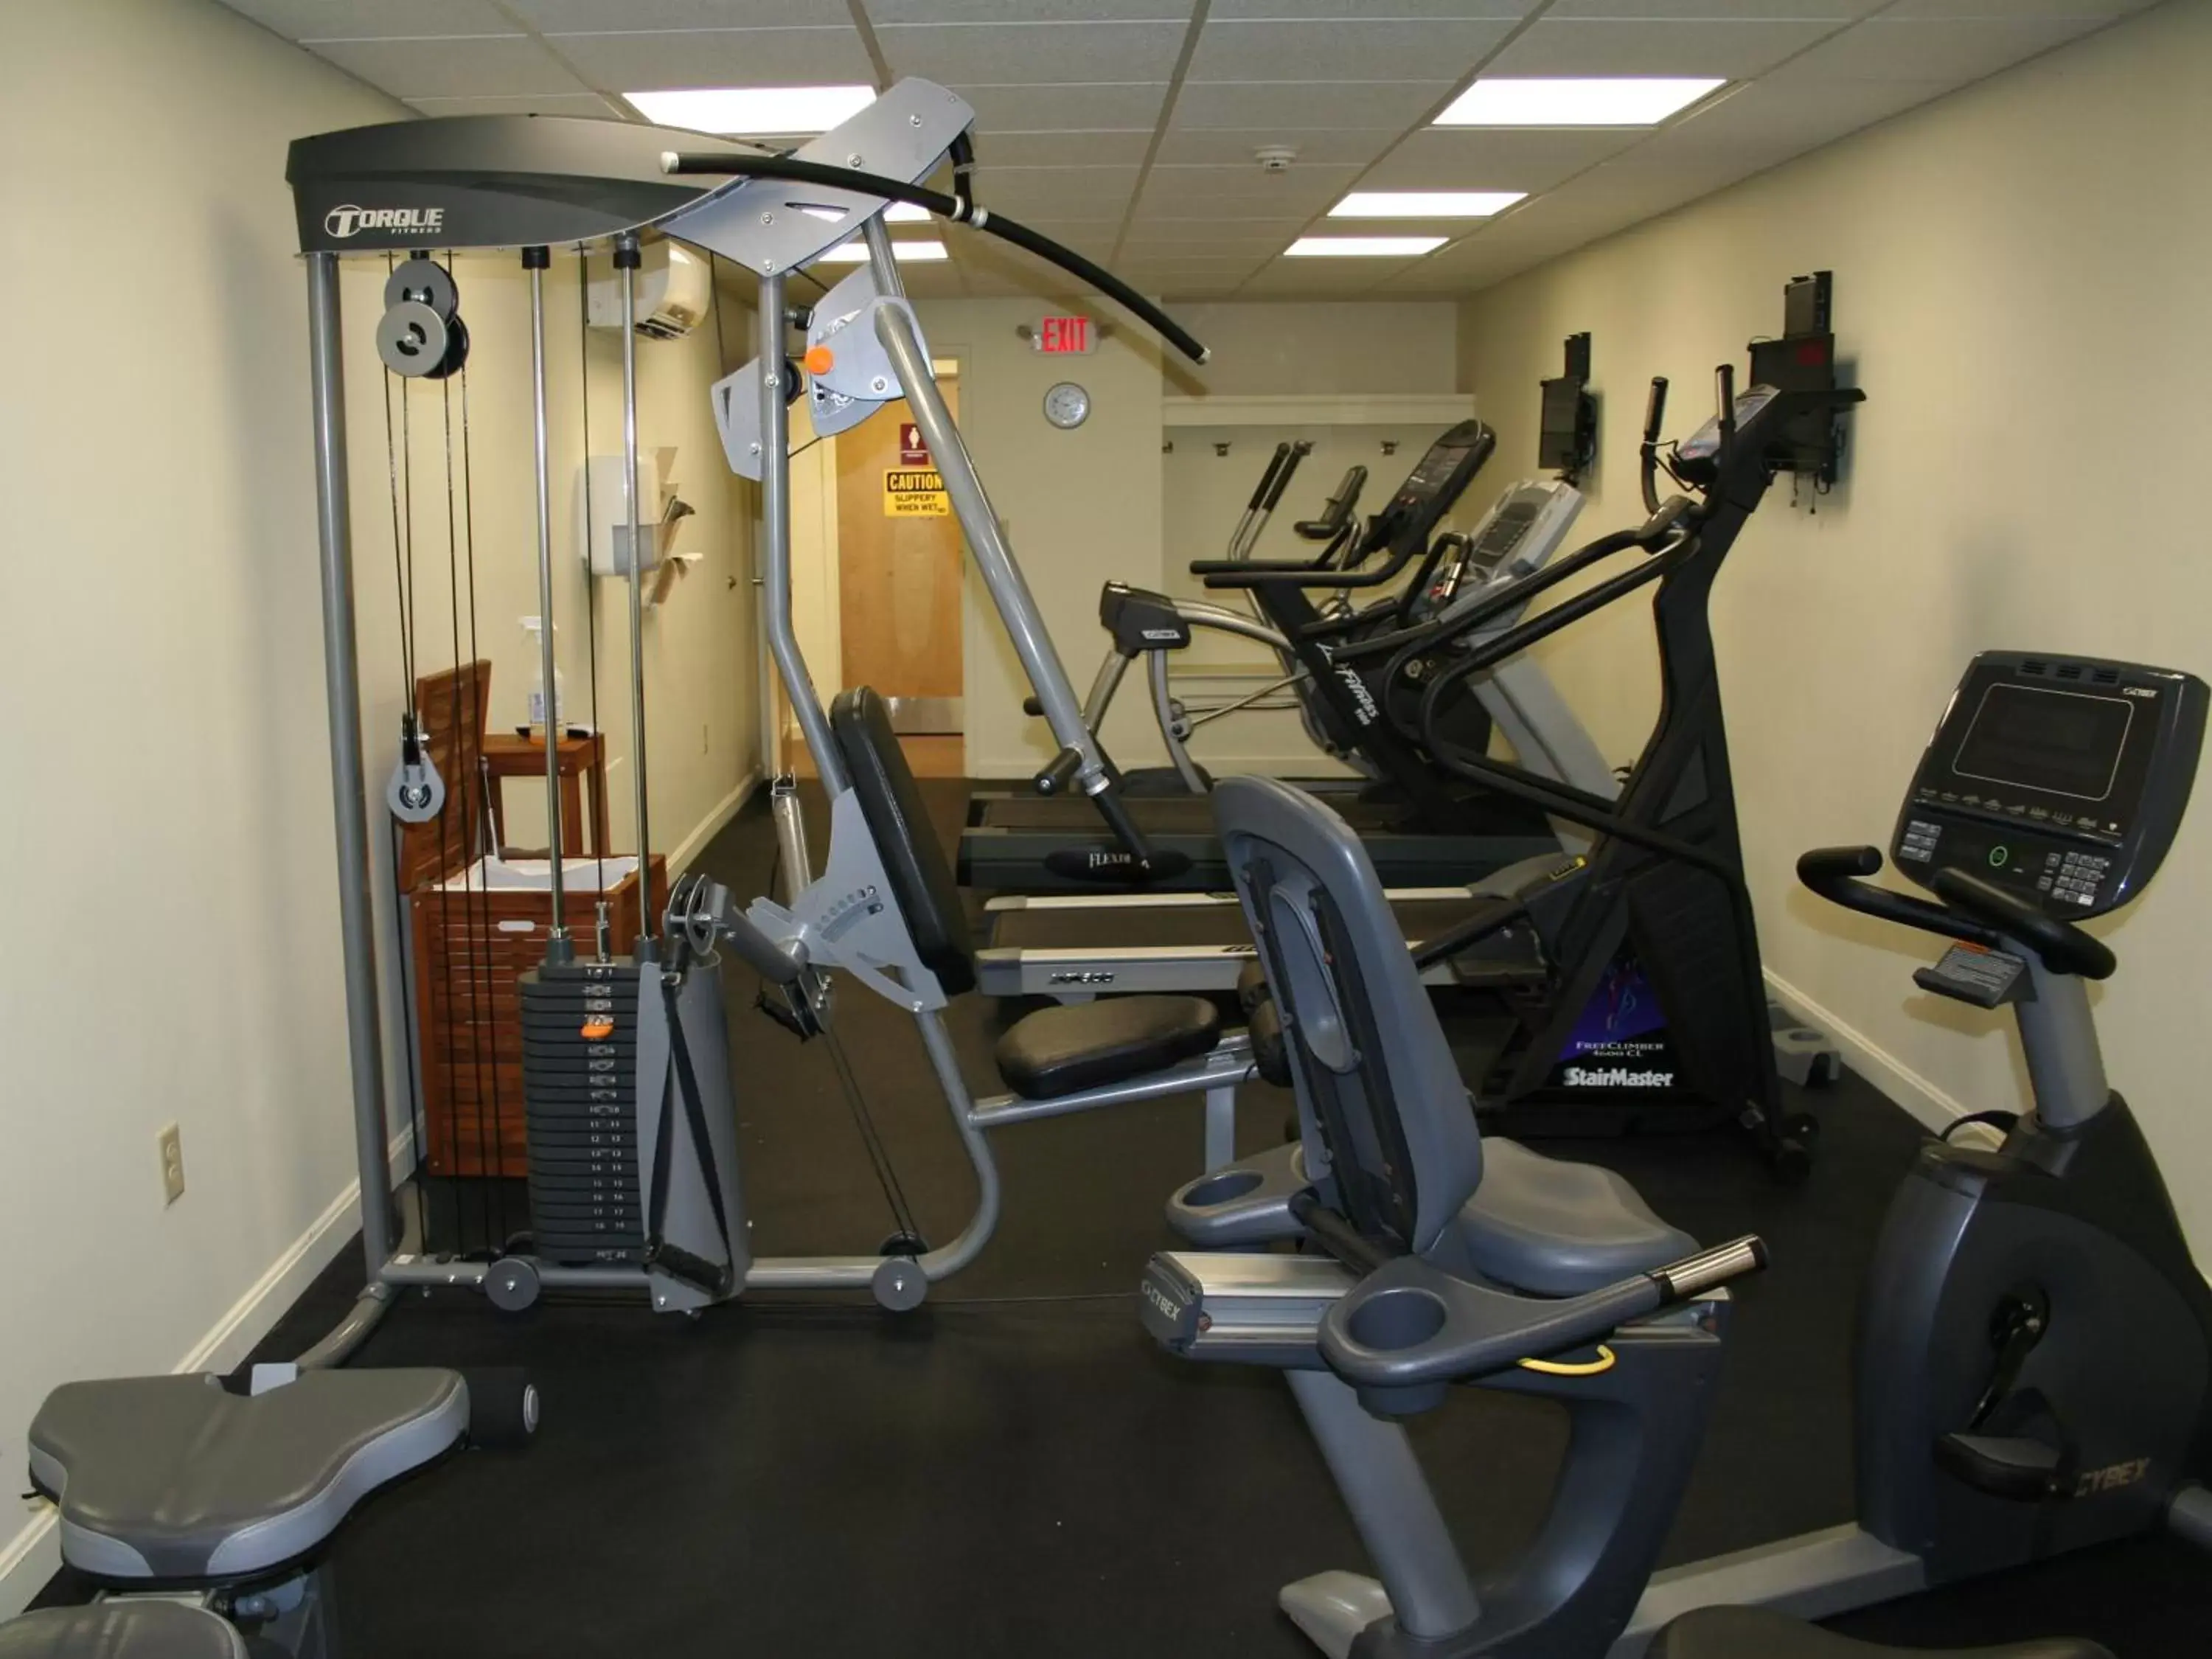 Fitness centre/facilities, Fitness Center/Facilities in Windrifter Resort